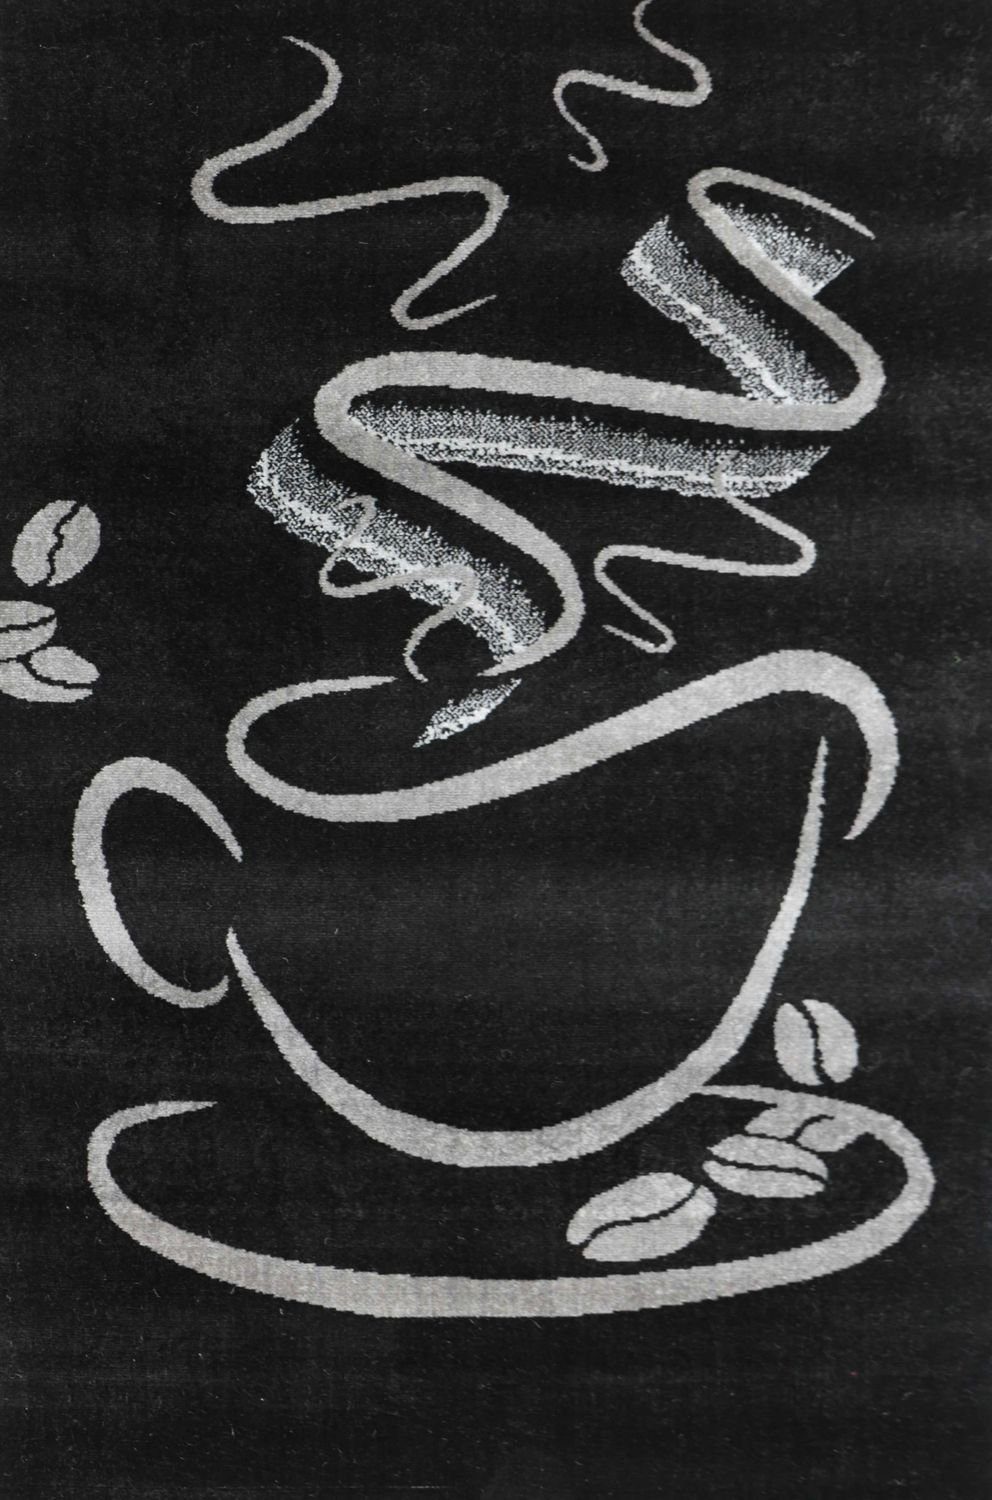 Teppich Küchenteppich Cappuccino, Küchenteppiche, Vimoda, Trendiger Muster Schwarz Rechteckig, Tasse, Kurzflor mm, Höhe: 5 Teppich, Kaffee